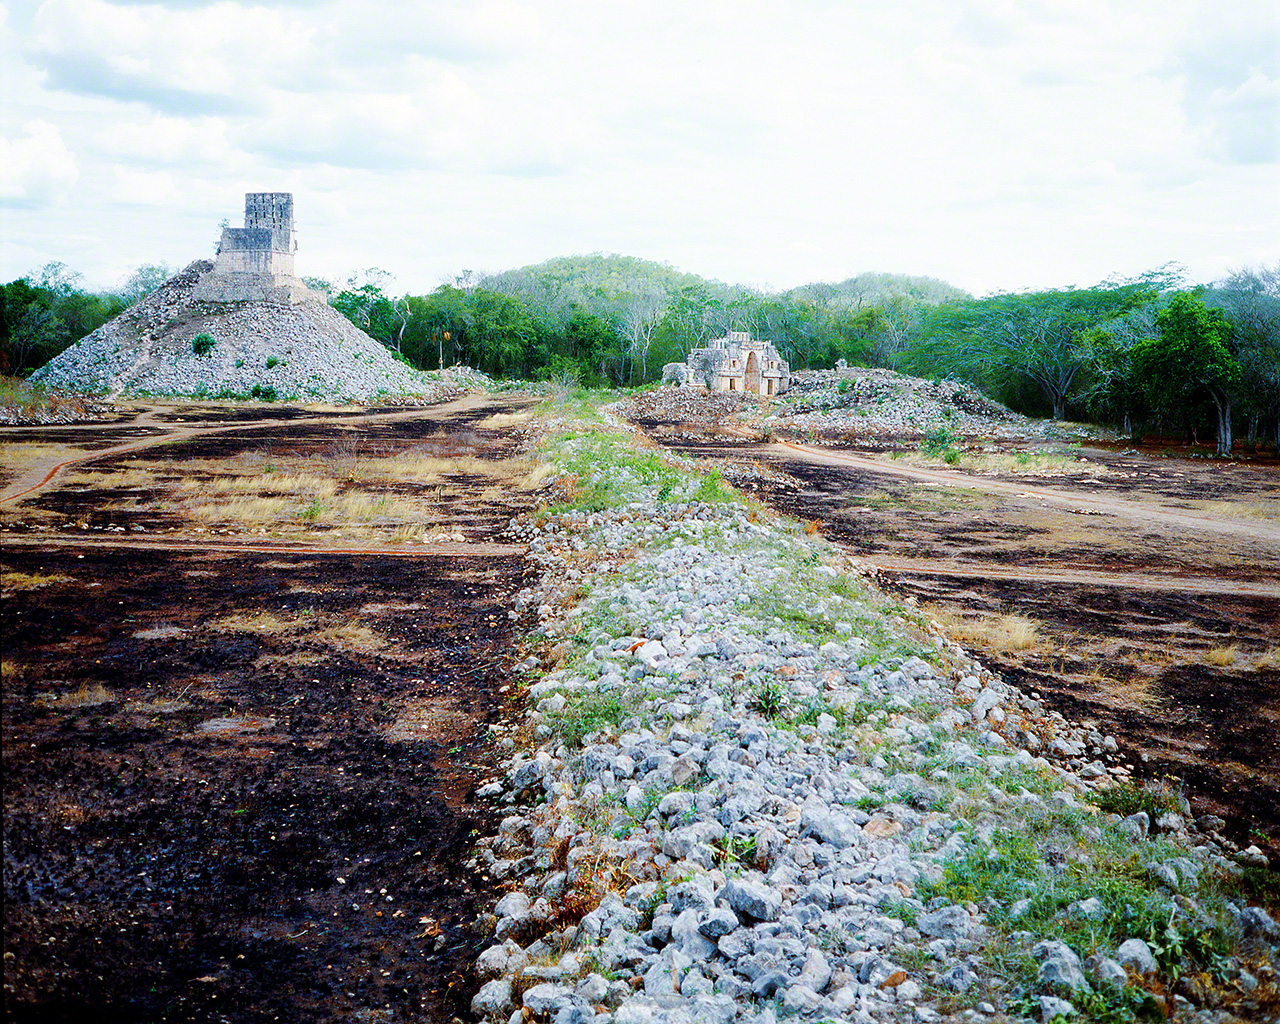 Photographie prise par Haga en 1981, alors qu'il participait à des fouilles archéologiques effectuées sur une route pavée d'un site maya, au Mexique. Ce sont les expériences qu'il a faites à cette occasion qui l'ont conduit à devenir photographe.